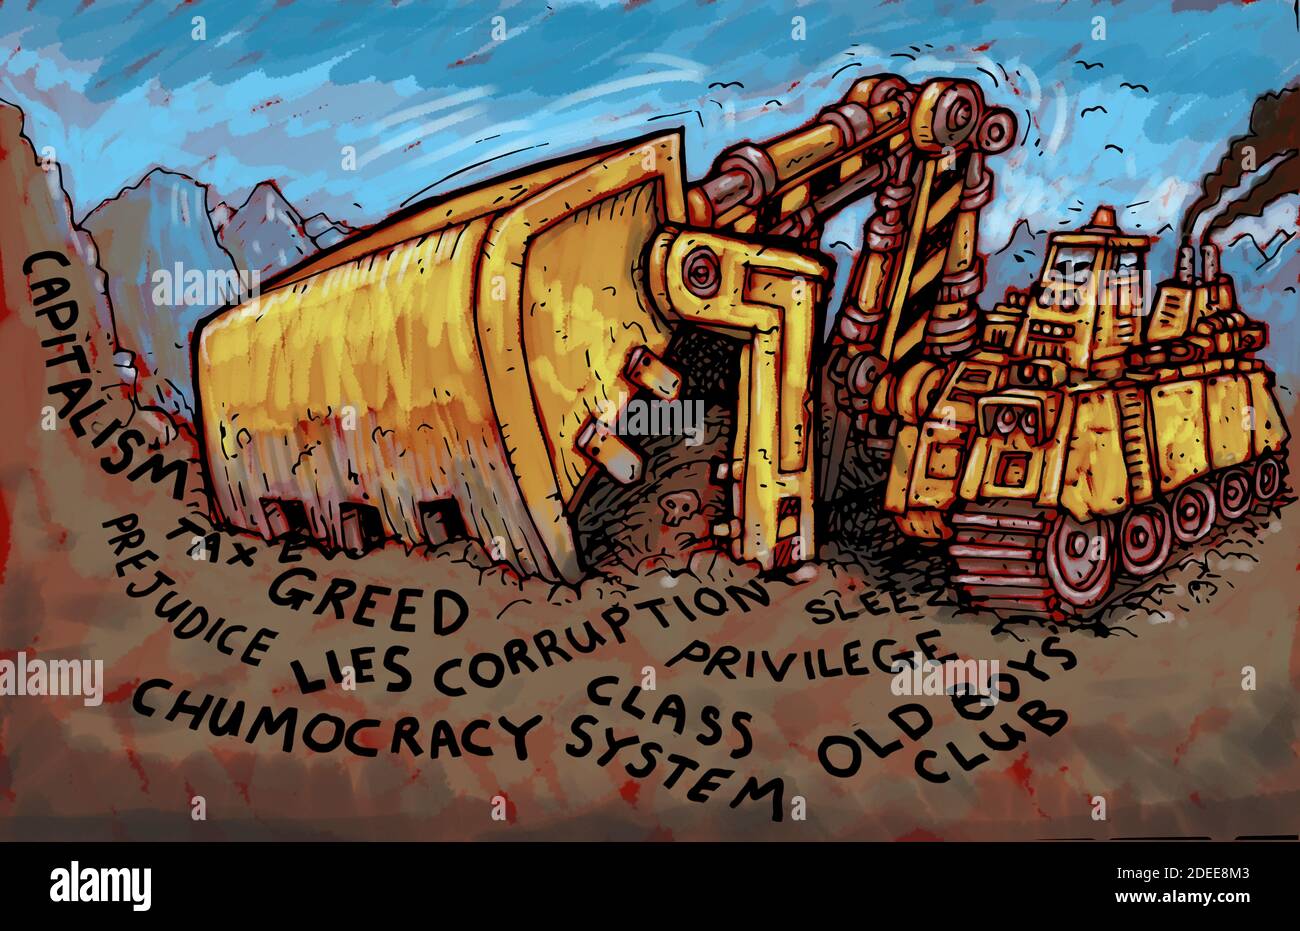 Ilustración de arte conceptual que muestra el poder destructivo de la clase de corrupción, la chumocracia, la avaricia, el privilegio, el club de los viejos, las mentiras, el capitalismo, la avaricia fiscal Foto de stock